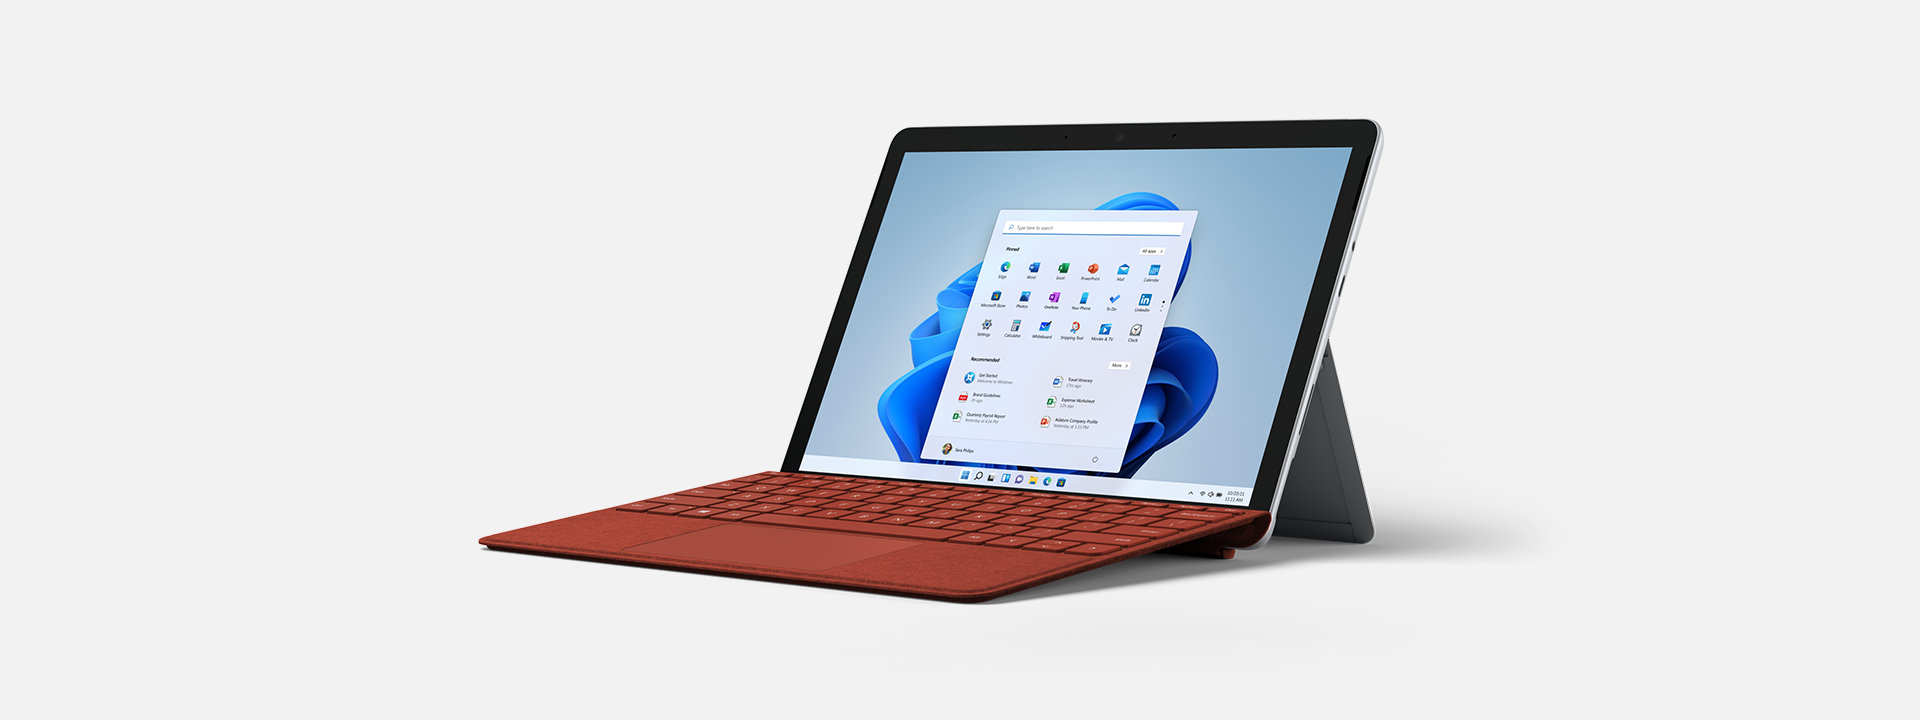 キーボードを装着した、ノート PC として使われている法人向け Surface Go 3。